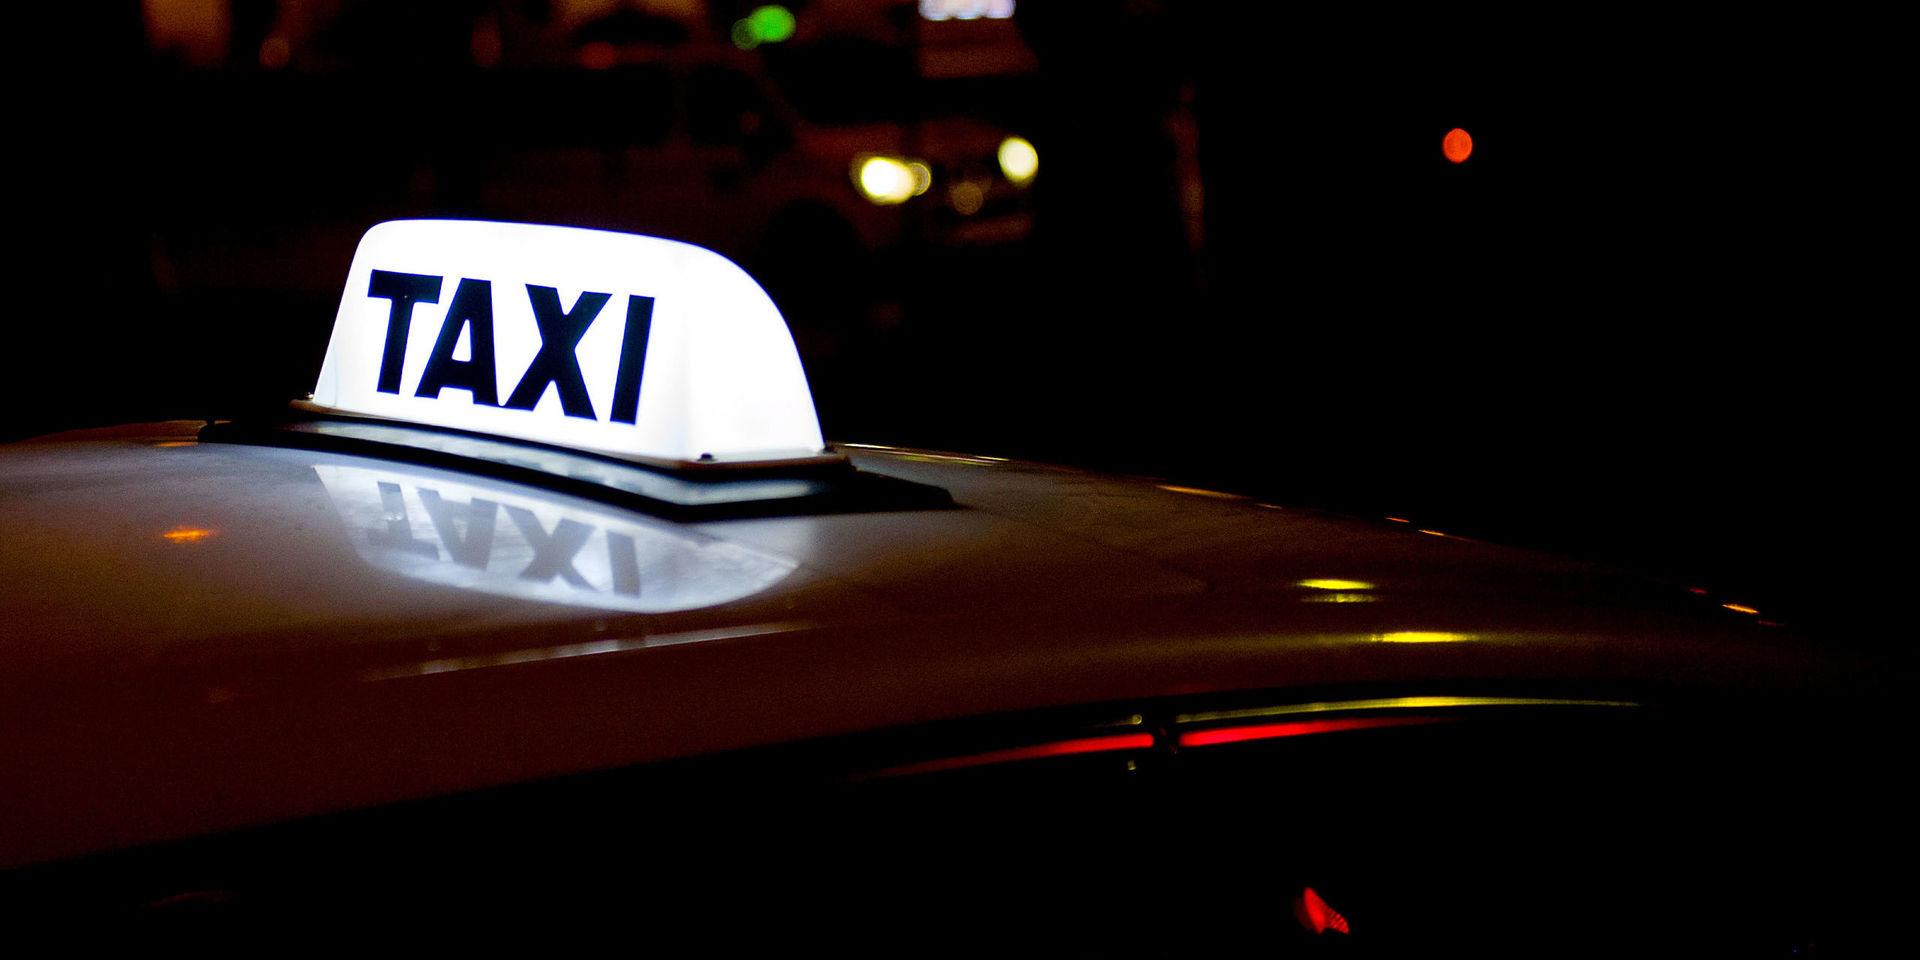 Taxiresan slutade med att Kristin Laxing blev av med sin mobiltelefon när hon försökte få fram pengar för att betala. Enligt Taxi Göteborg ska chauffören ha lämnat sina kontaktuppgifter, men inte blivit uppringd.